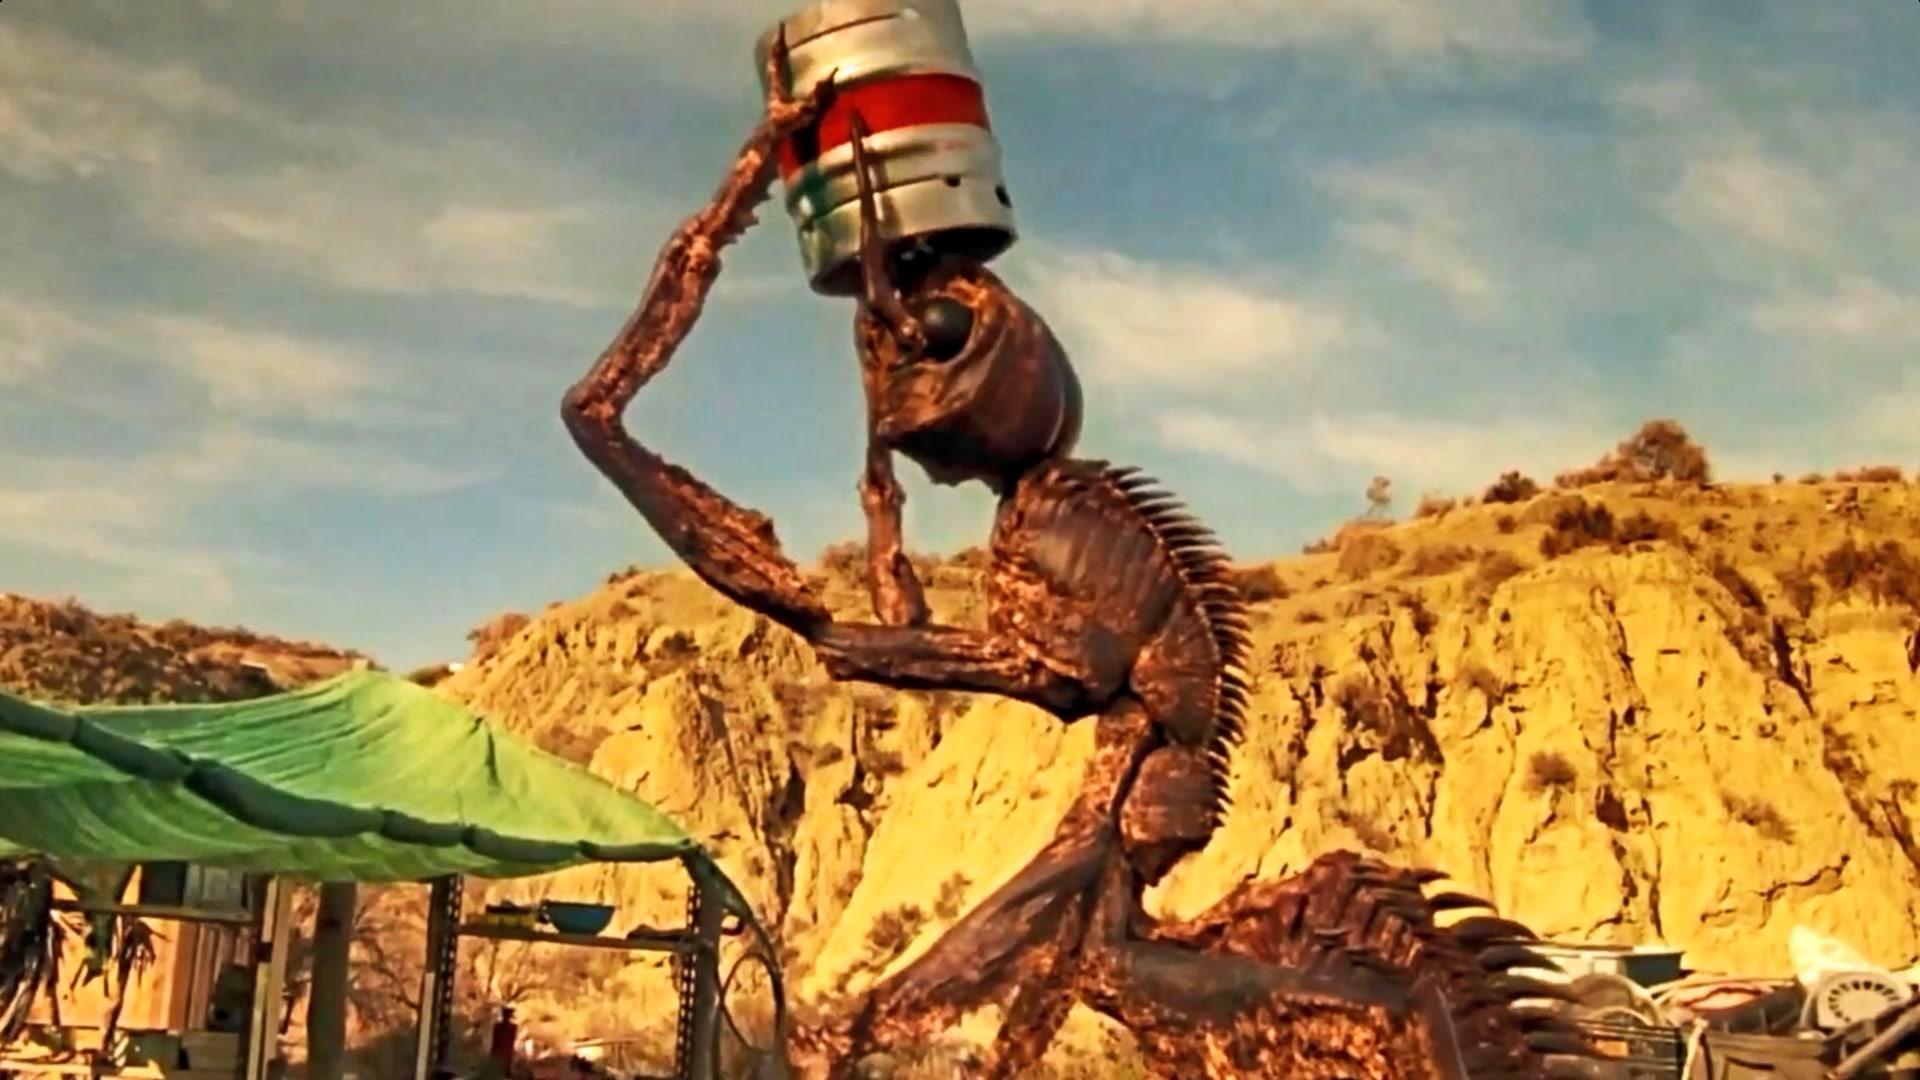 科学家用外星人dna培育出2米高的巨型蚂蚁最爱喝啤酒